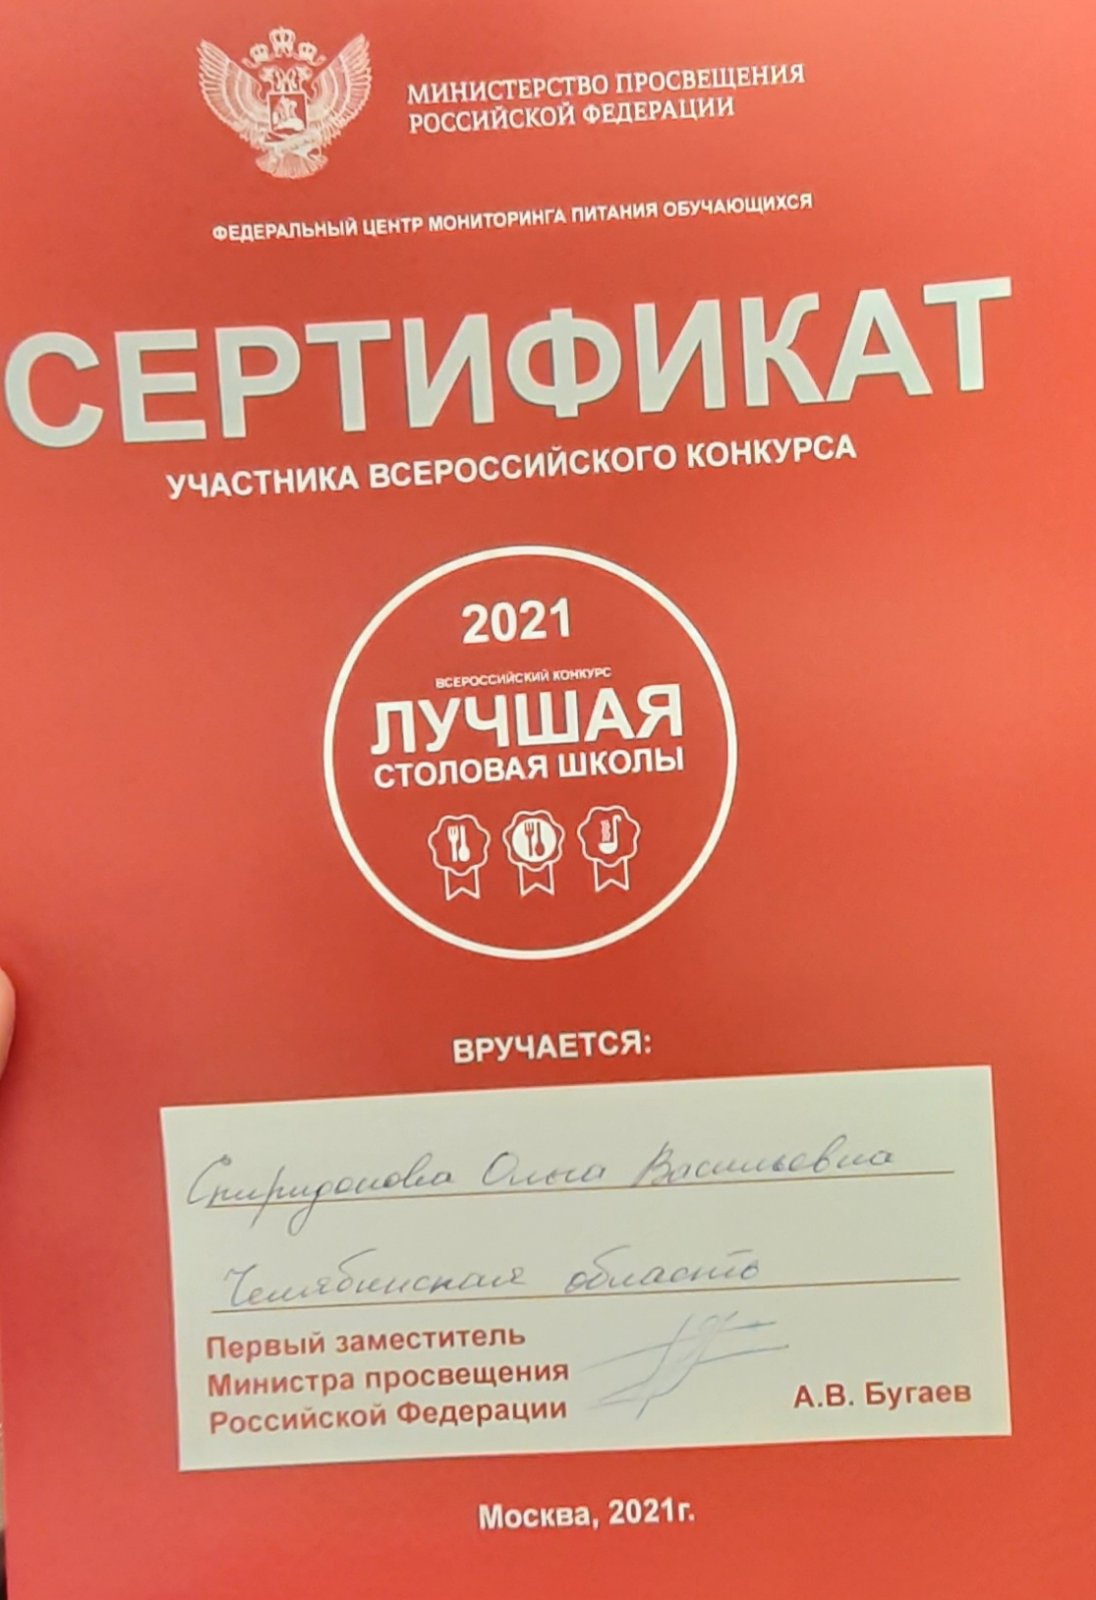 Всероссийский конкурс «Лучшая столовая школы» 